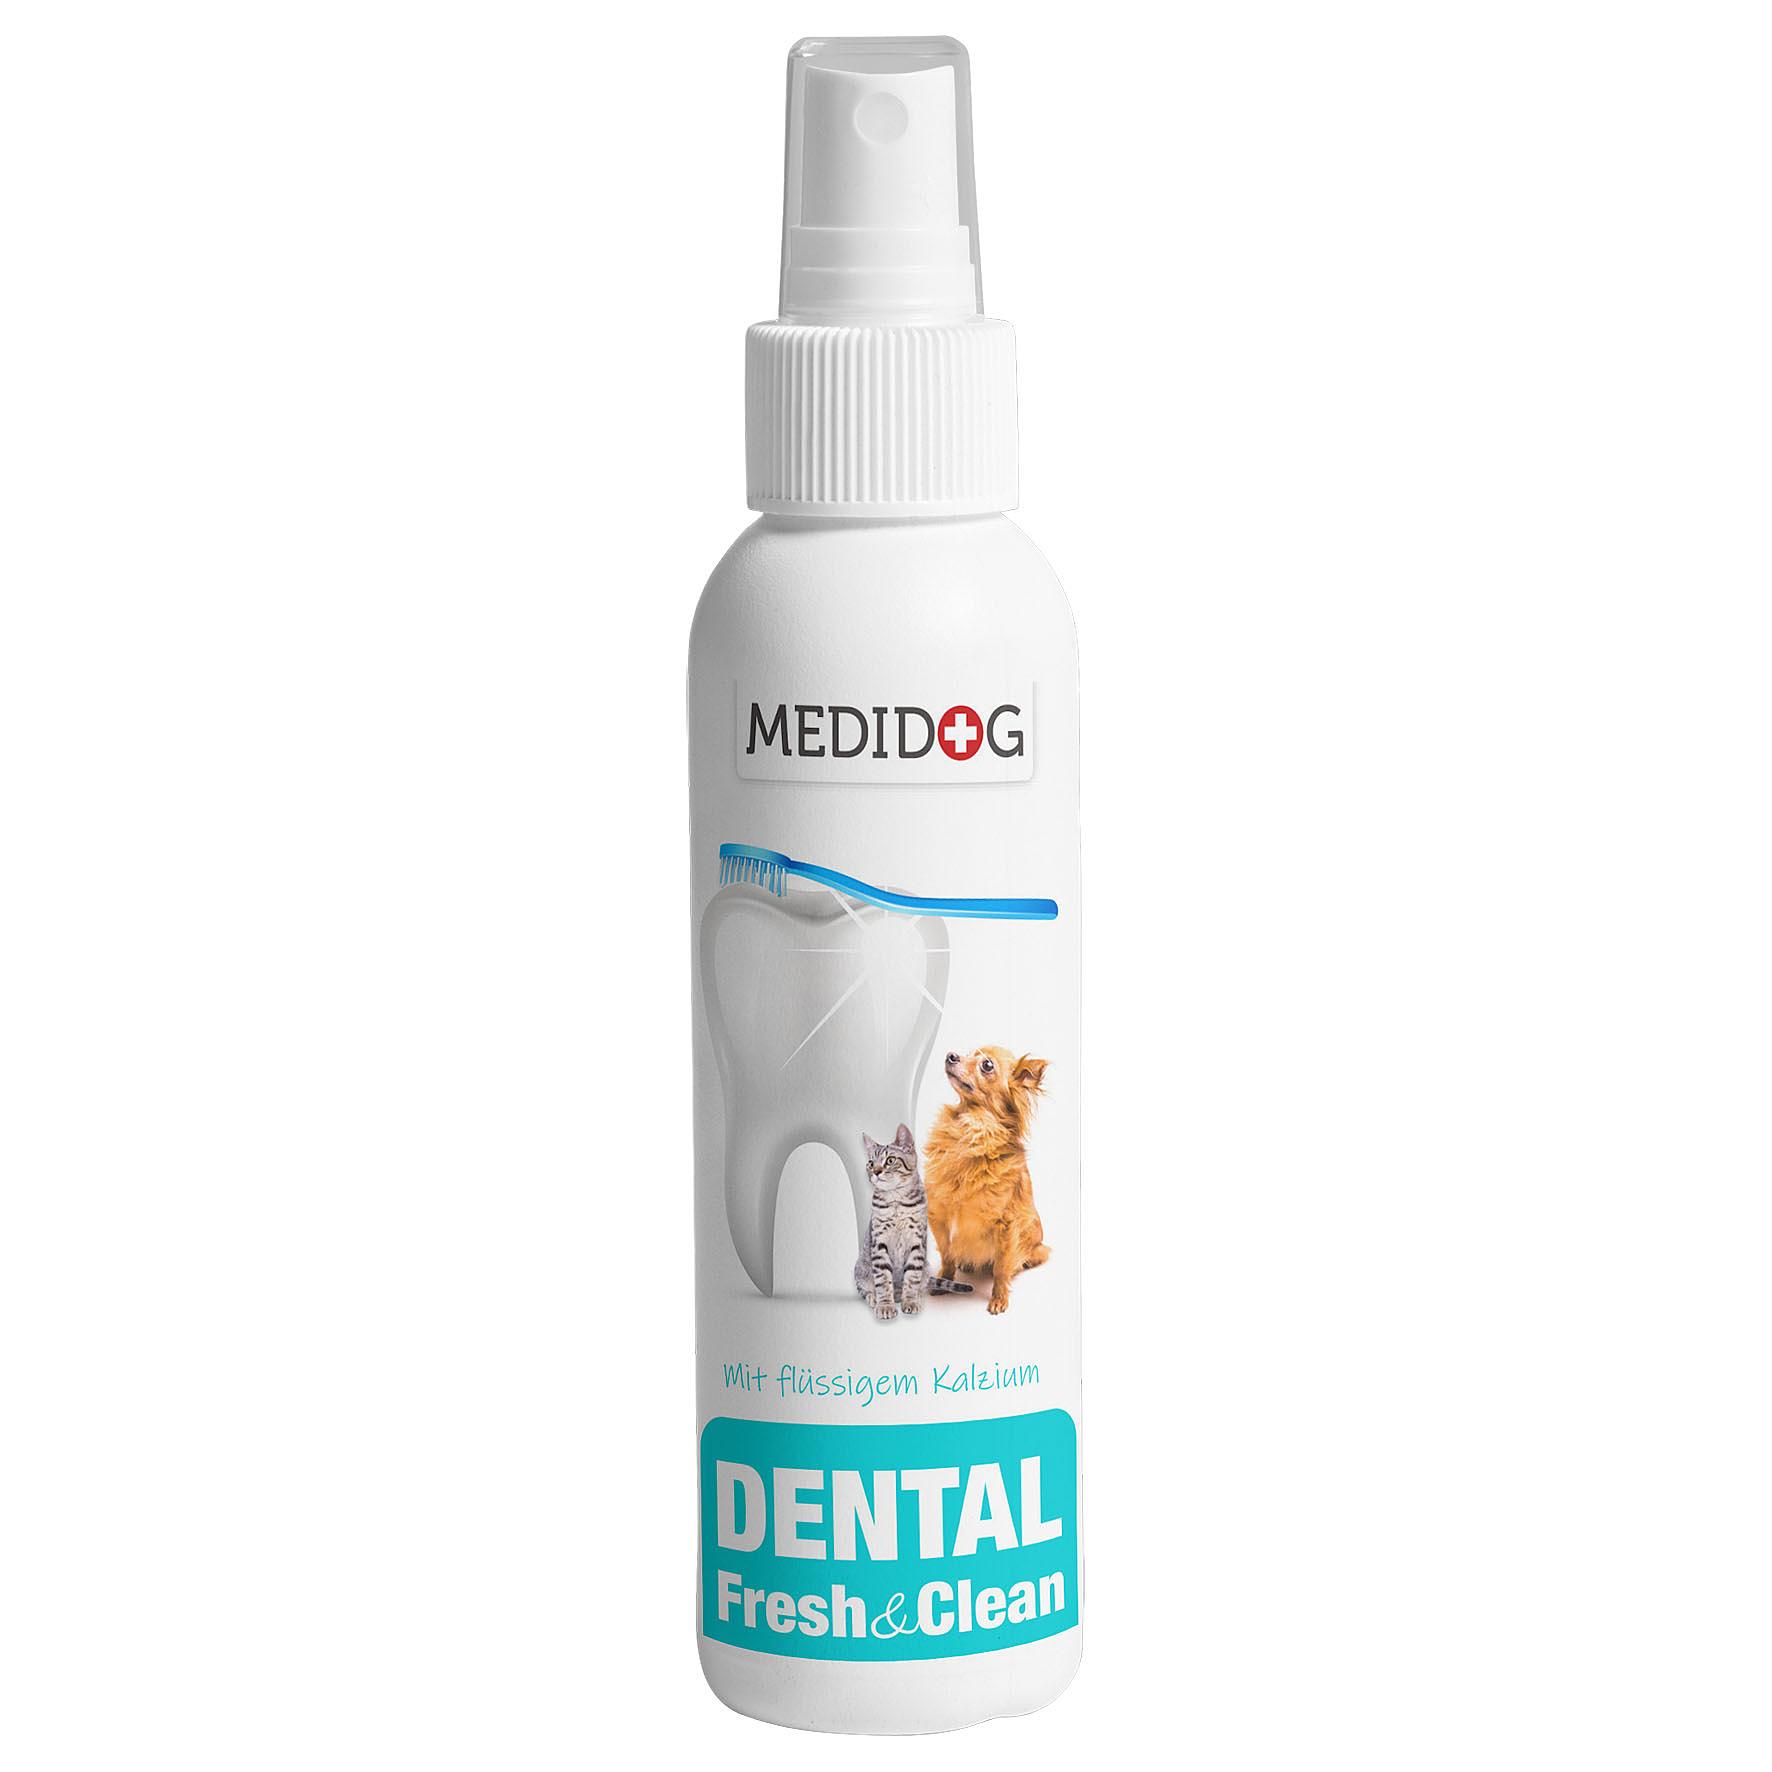 Medidog Dental Fresh & Clean 